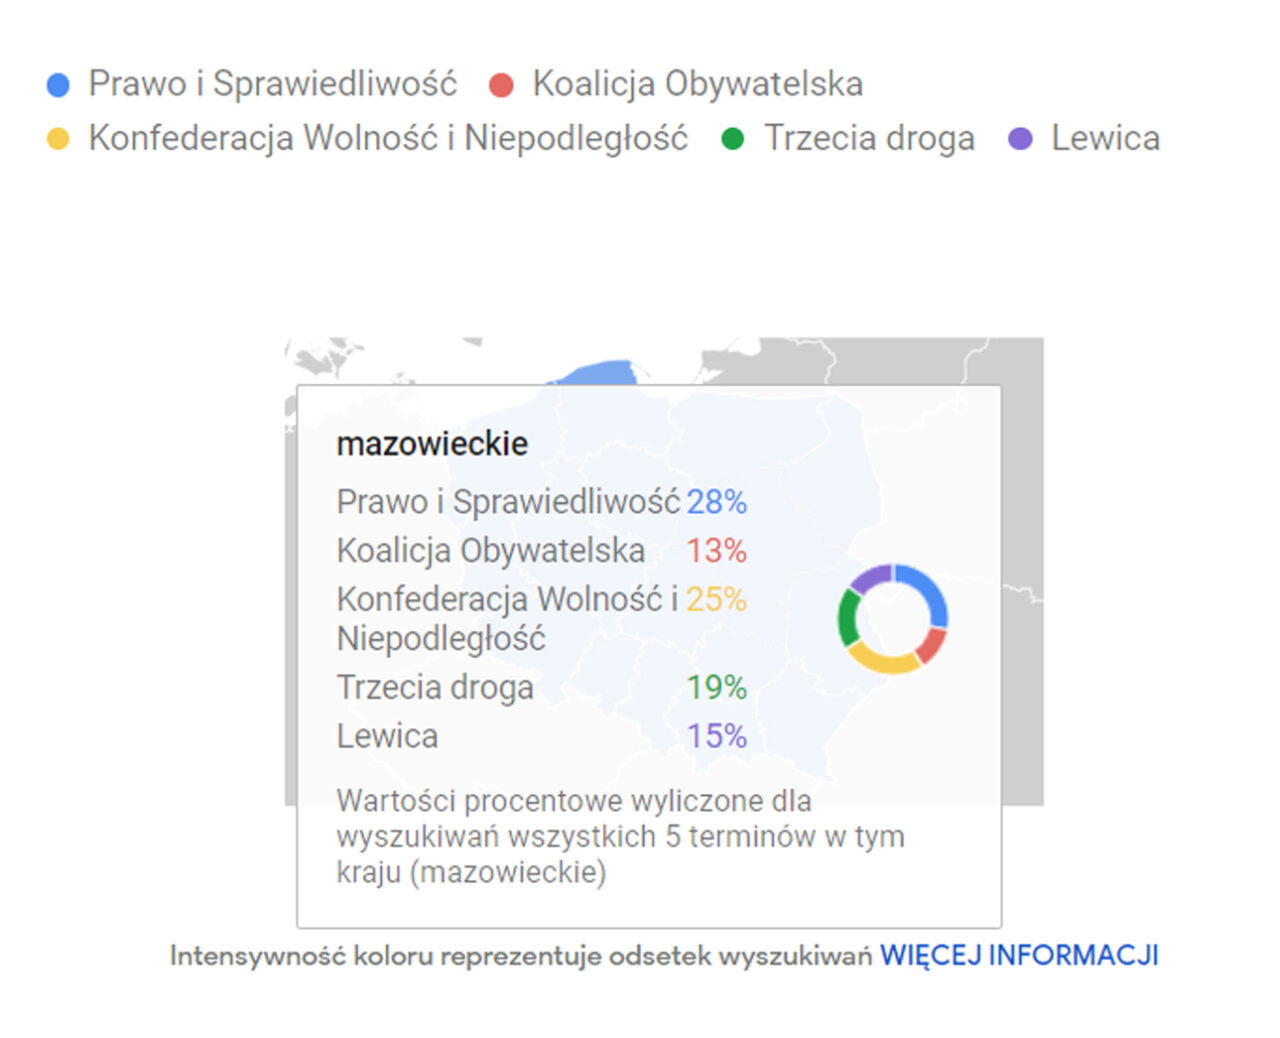 Wyniki z Google Trends pokazujące zainteresowanie partiami politycznymi w województwie mazowieckim. Na tle mapy Polski widać rozkład procentowy poszczególnych partii